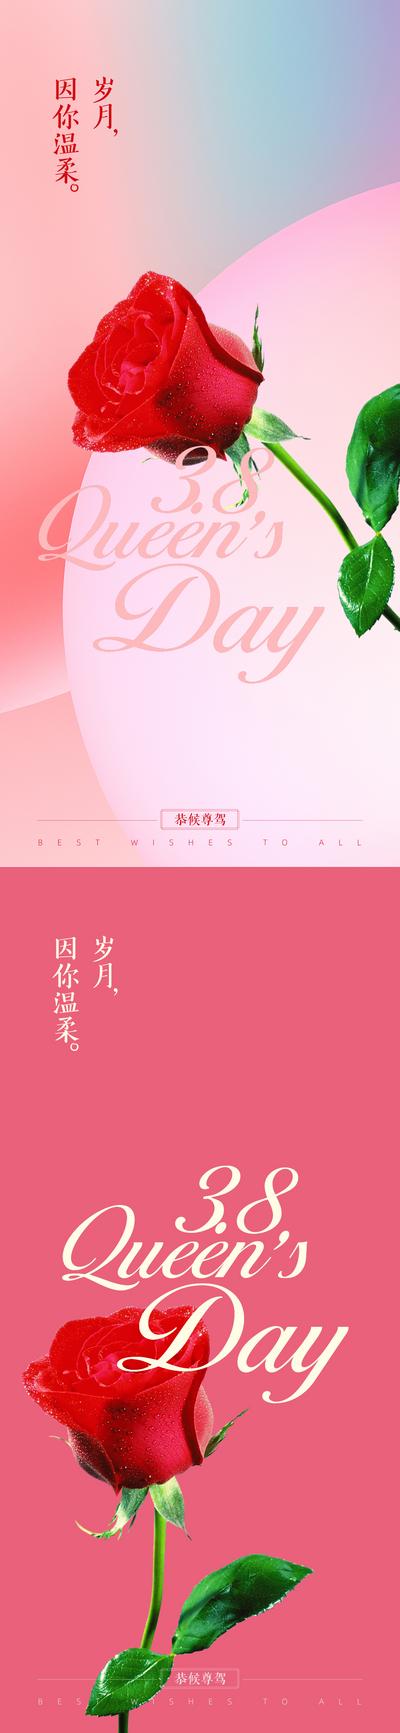 南门网 海报 公历节日 房地产 女神节 妇女节 玫瑰 38 系列